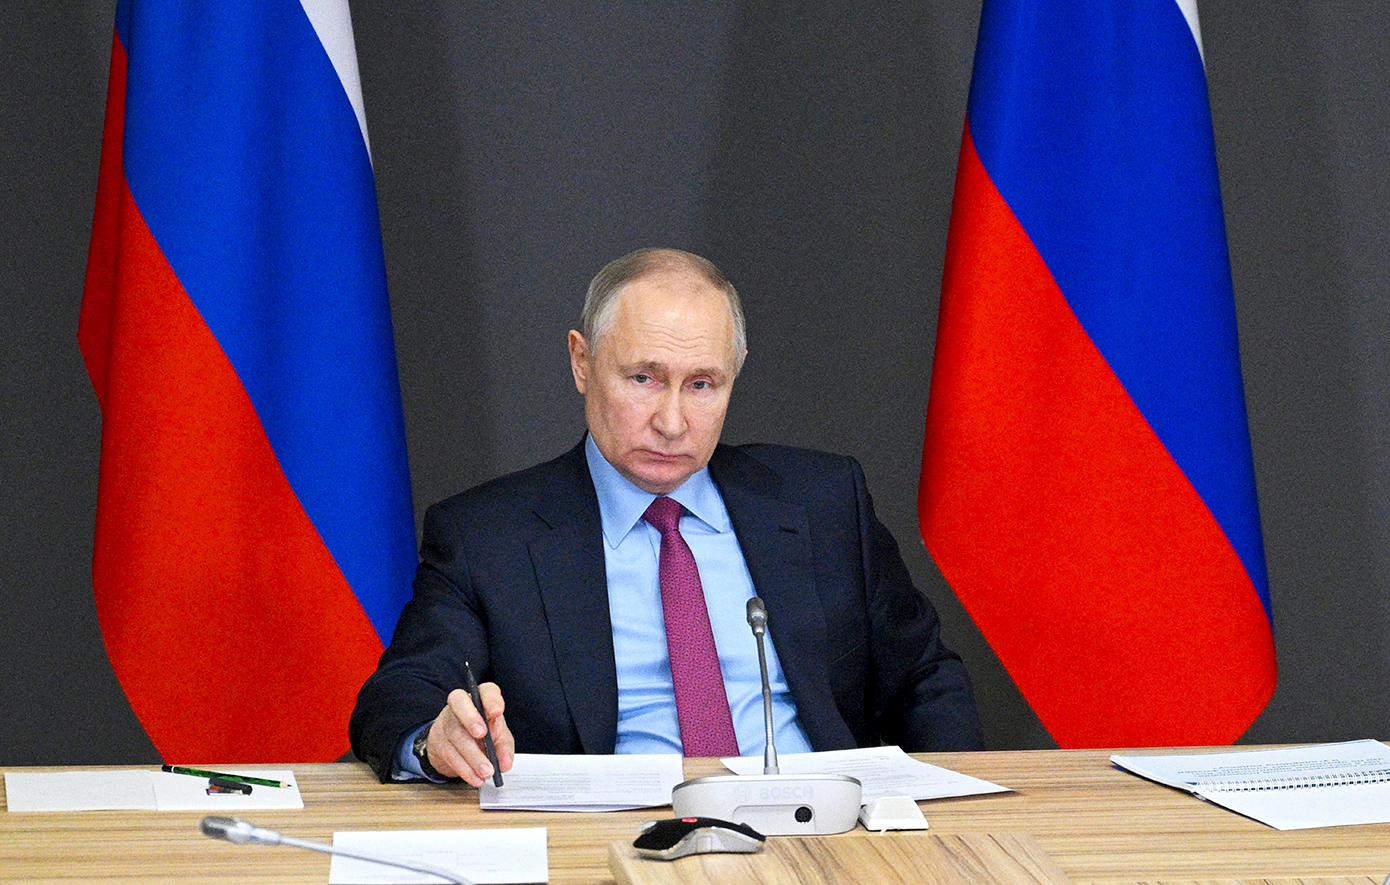 Προεδρικές εκλογές στη Ρωσία: Πότε θα γίνουν, ποιοι συμμετέχουν και τι αναμένεται να συμβεί